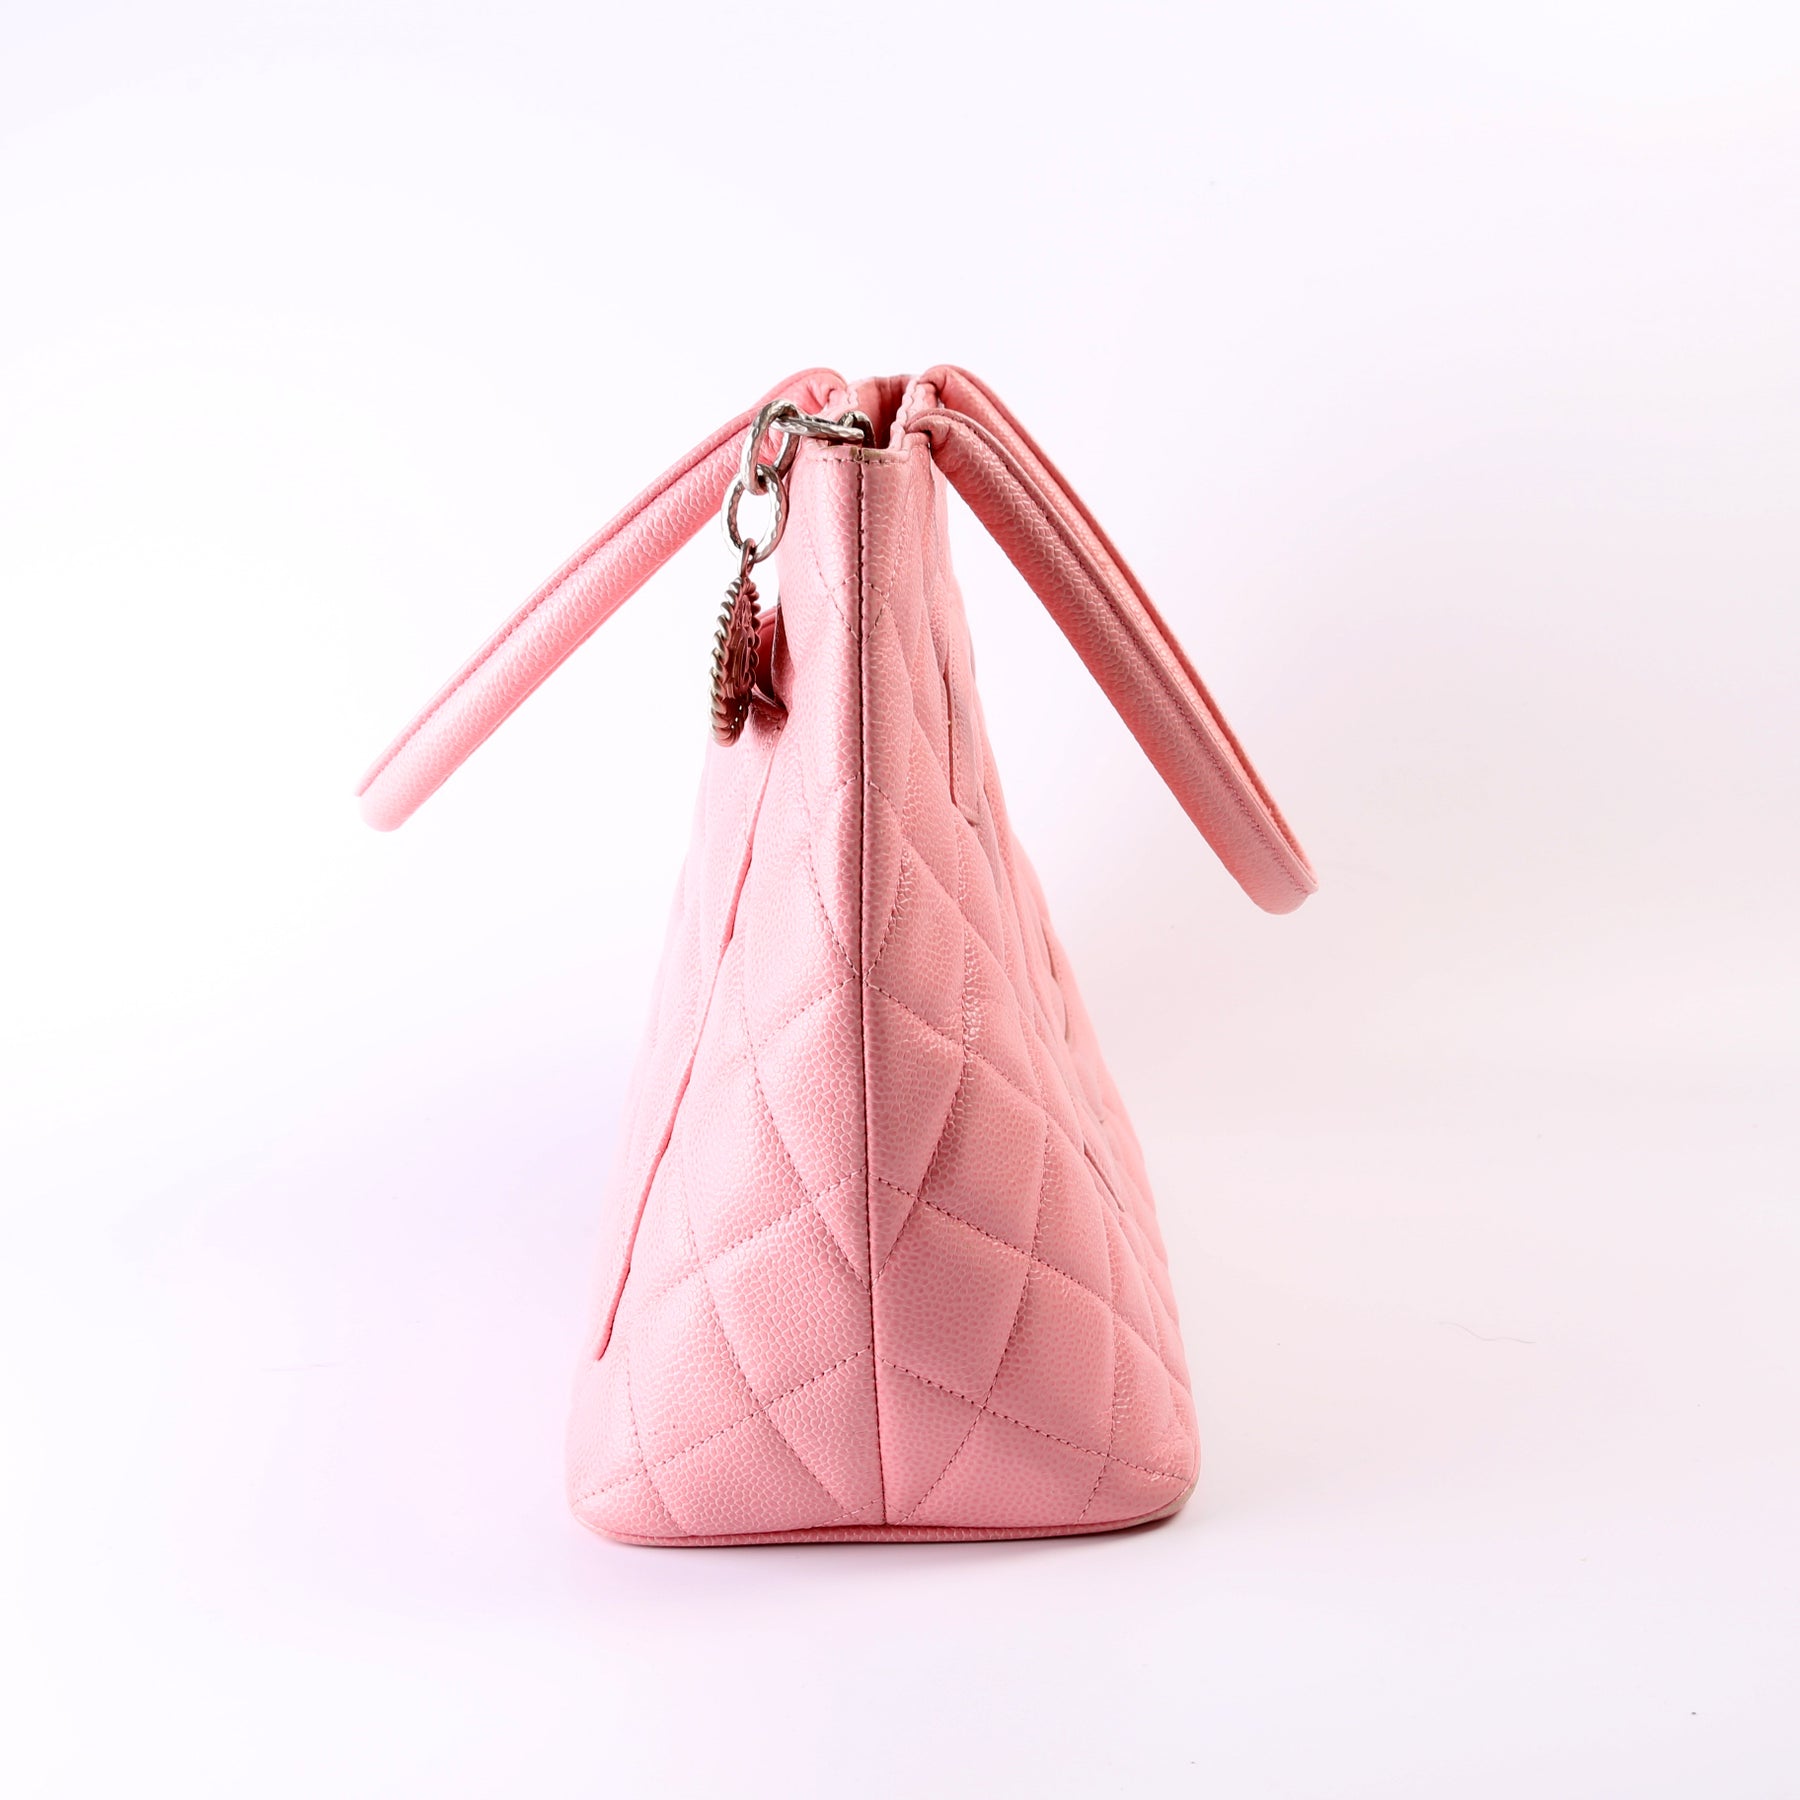 Medallion Tote – Keeks Designer Handbags